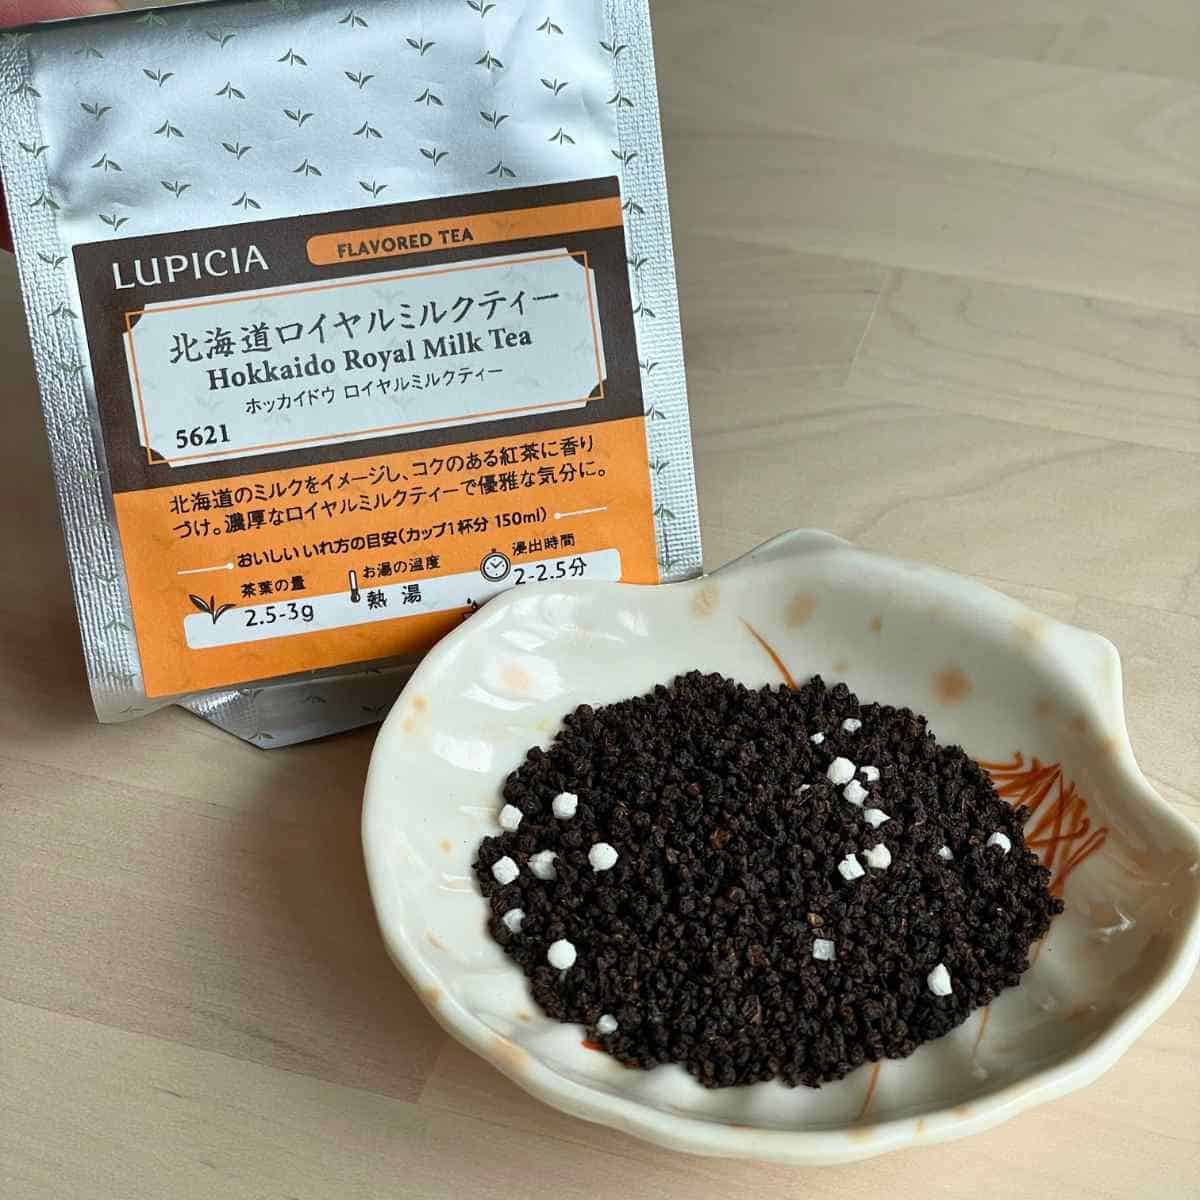 Lupicia Hokkaido Royal milk tea